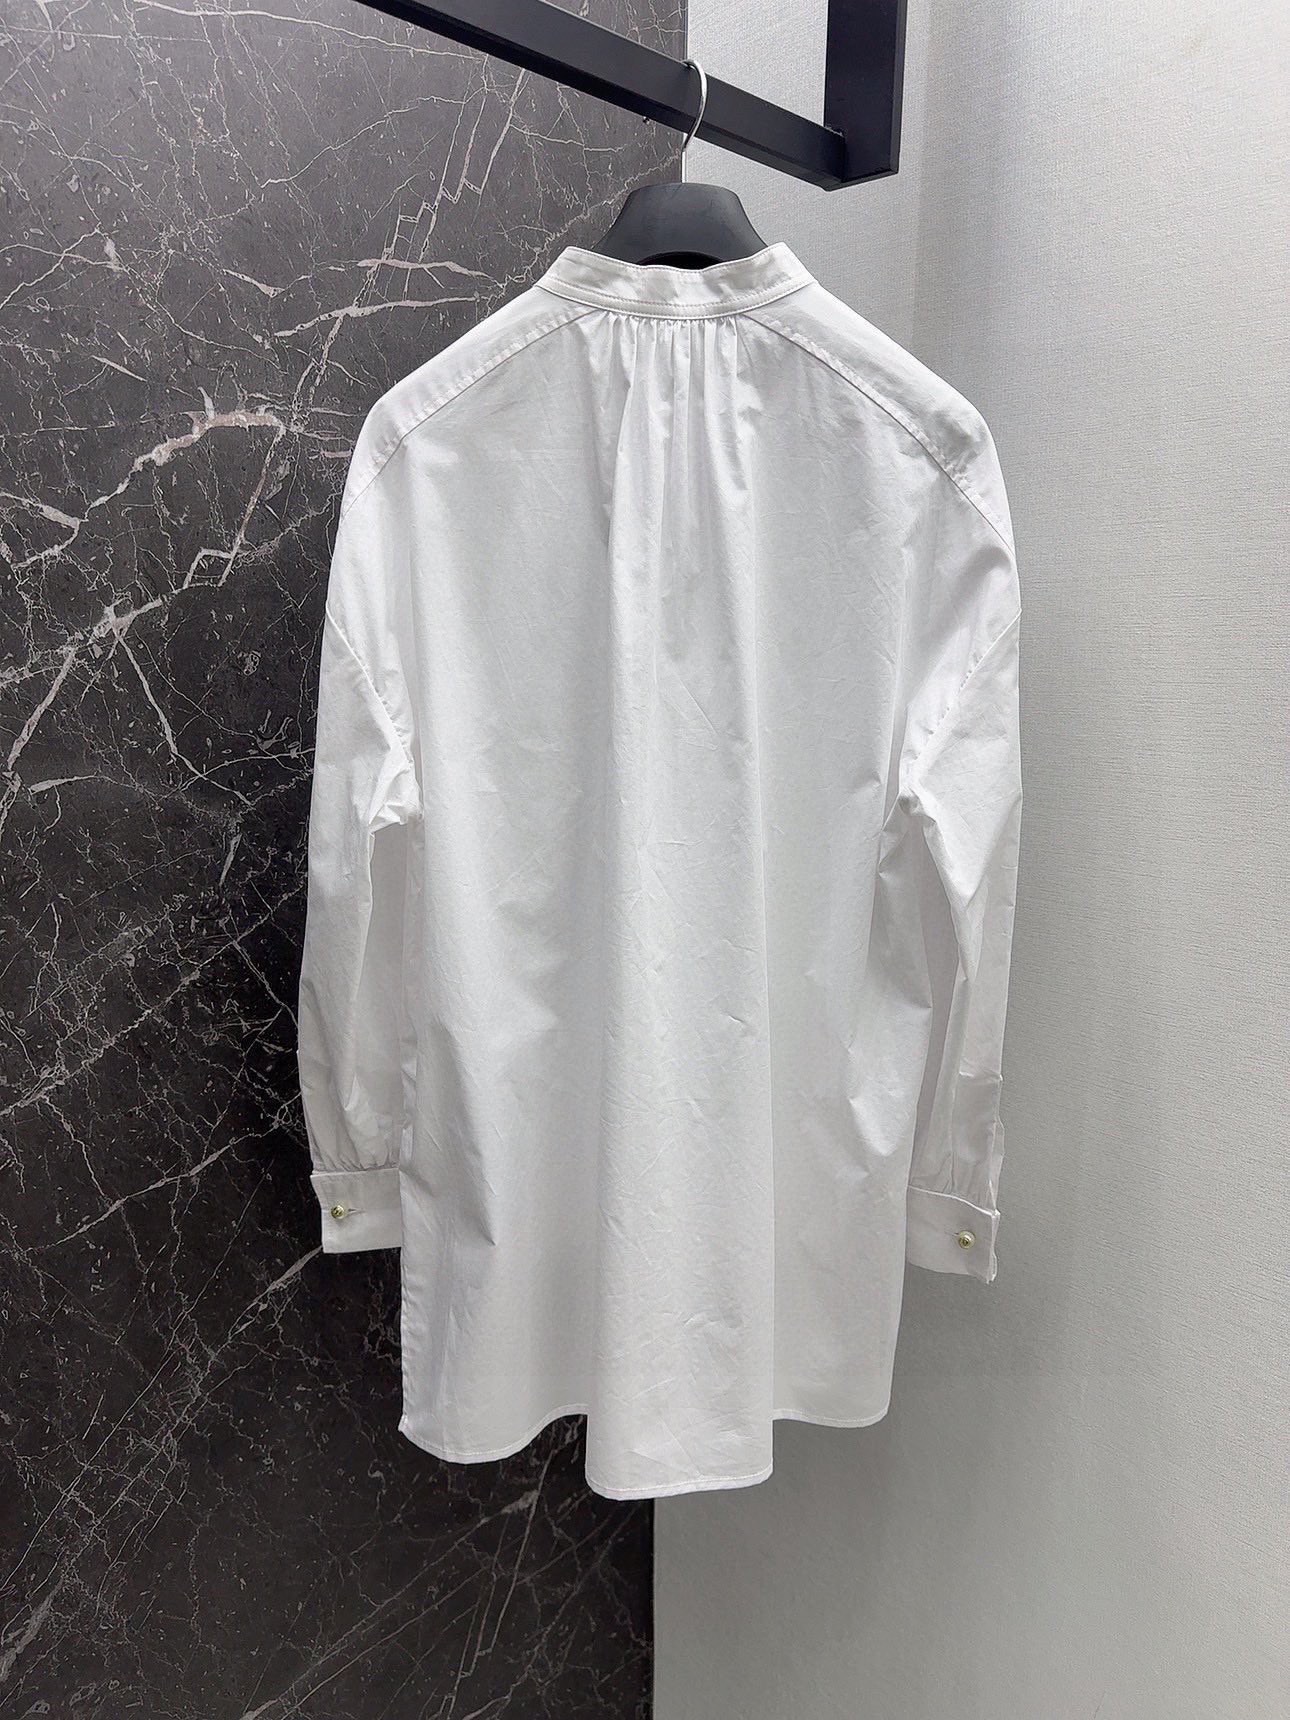 CD24SS早春最新款珍珠袖扣长袖衬衫法式优雅随性洒脱长款衬衫可以随意塑造各种风格穿搭气质白富美超级减龄